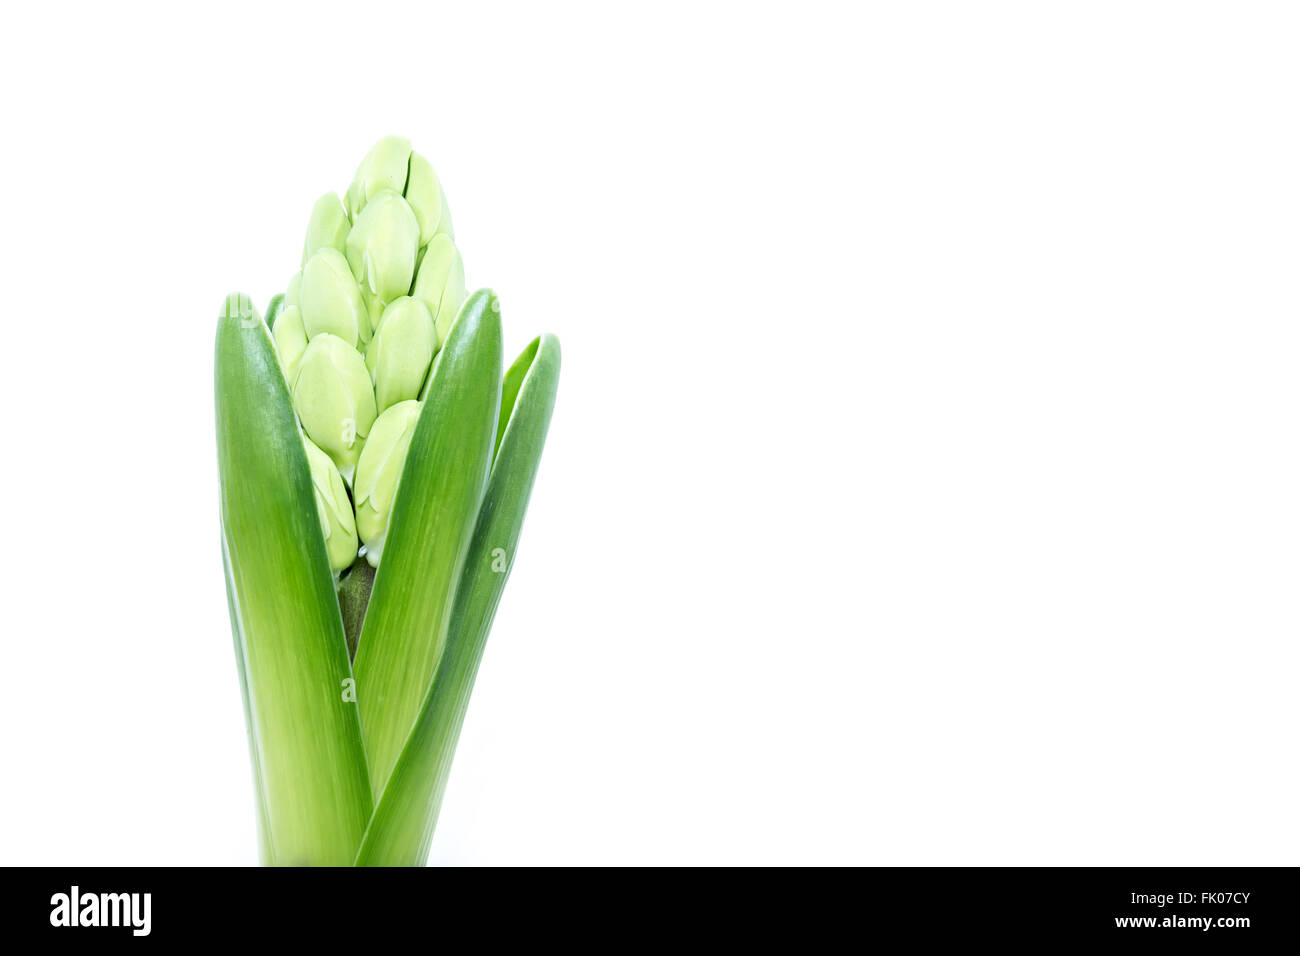 Les jeunes en herbe verte hyacinth isolé sur fond blanc, copy space Banque D'Images